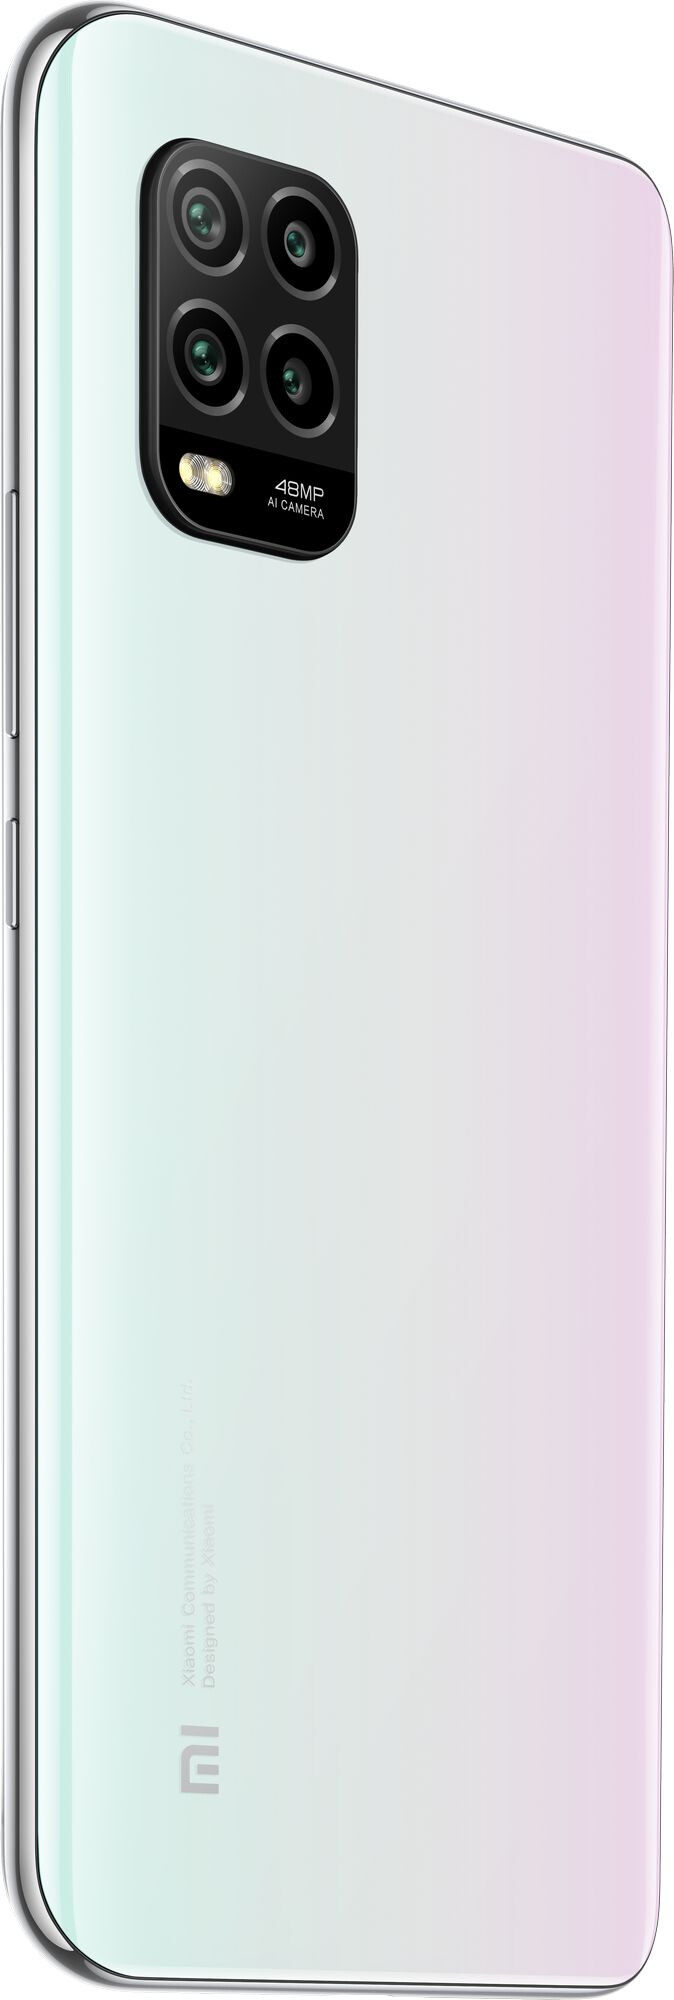 Смартфон Xiaomi Mi 10 Lite 5G 8/256GB White (Белый)